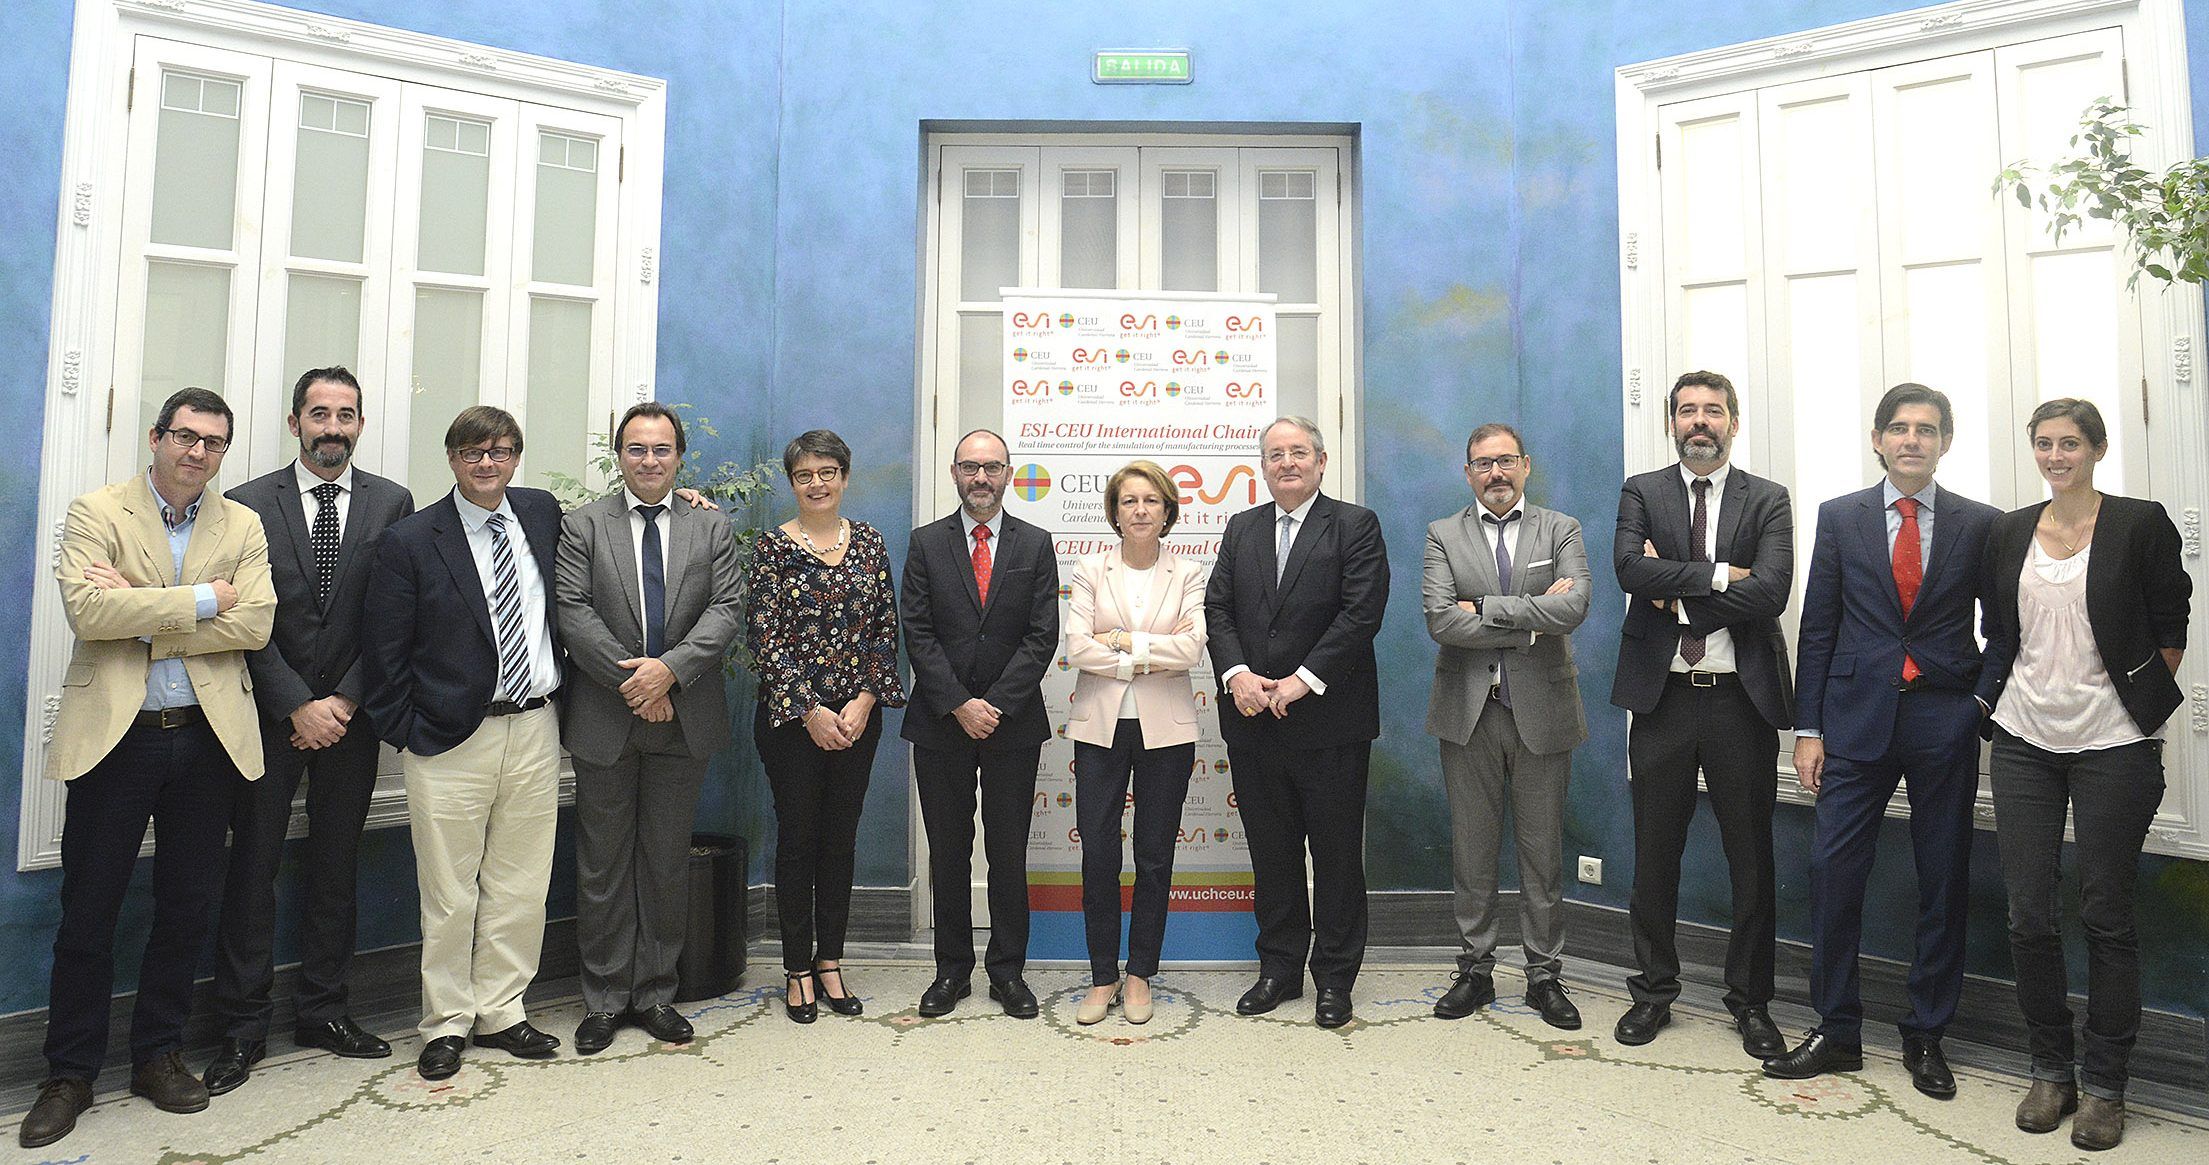 Representantes del Grupo multinacional francés ESI y la CEU UCH, en la presentación de la Cátedra internacional.